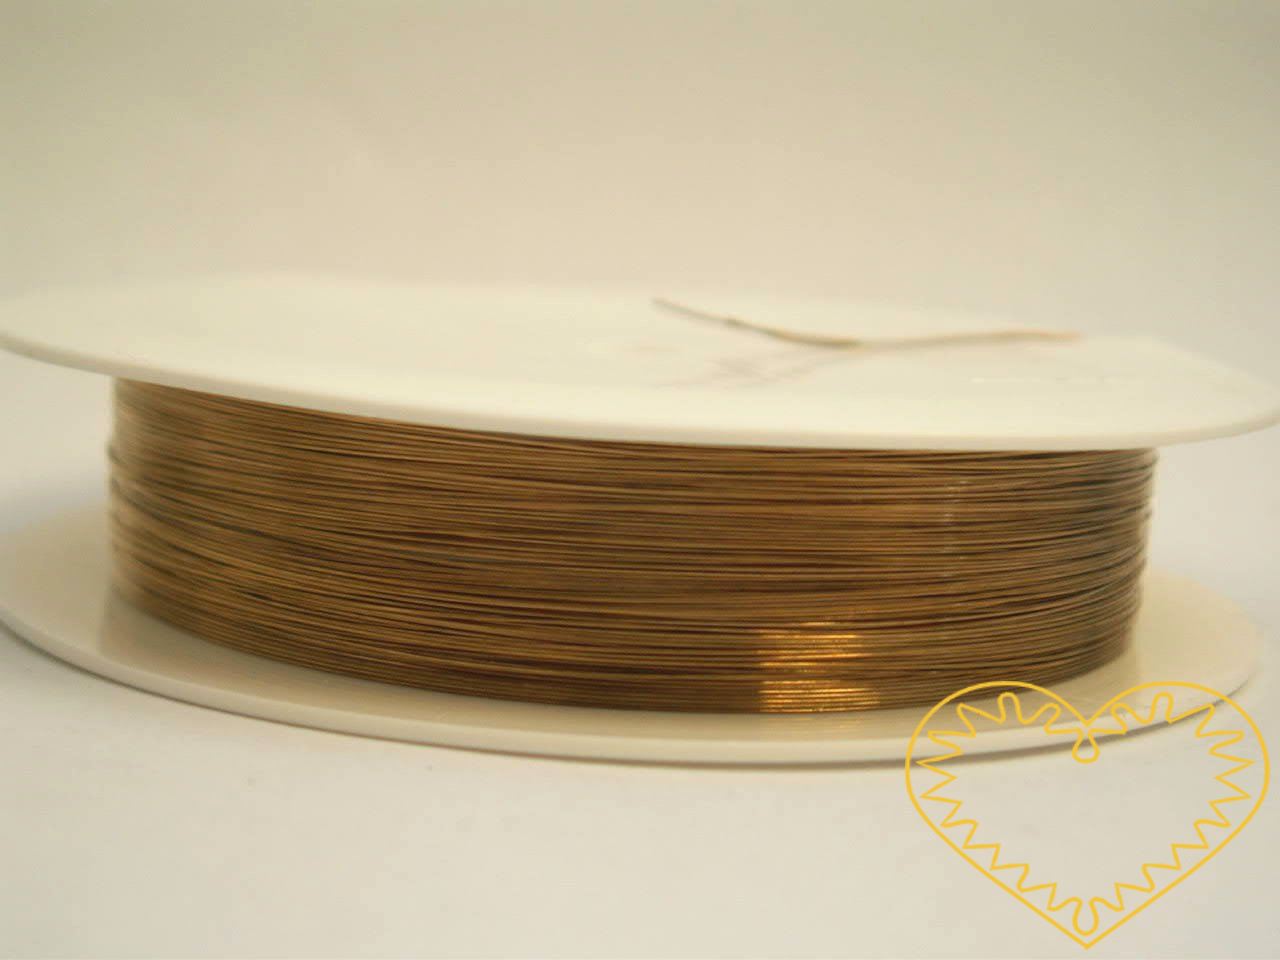 Drátek zlatý Ø 0,18 mm, návin 20 m. Kvalitní drátek, který je vyrobený v Německu a je hodně lesklý. Jádro drátu je měděné a drát je povrchově několikrát lakovaný. Využijeme jej například k výpletu a omotávání korpusu šperku ze silnějšího drátu, k pal